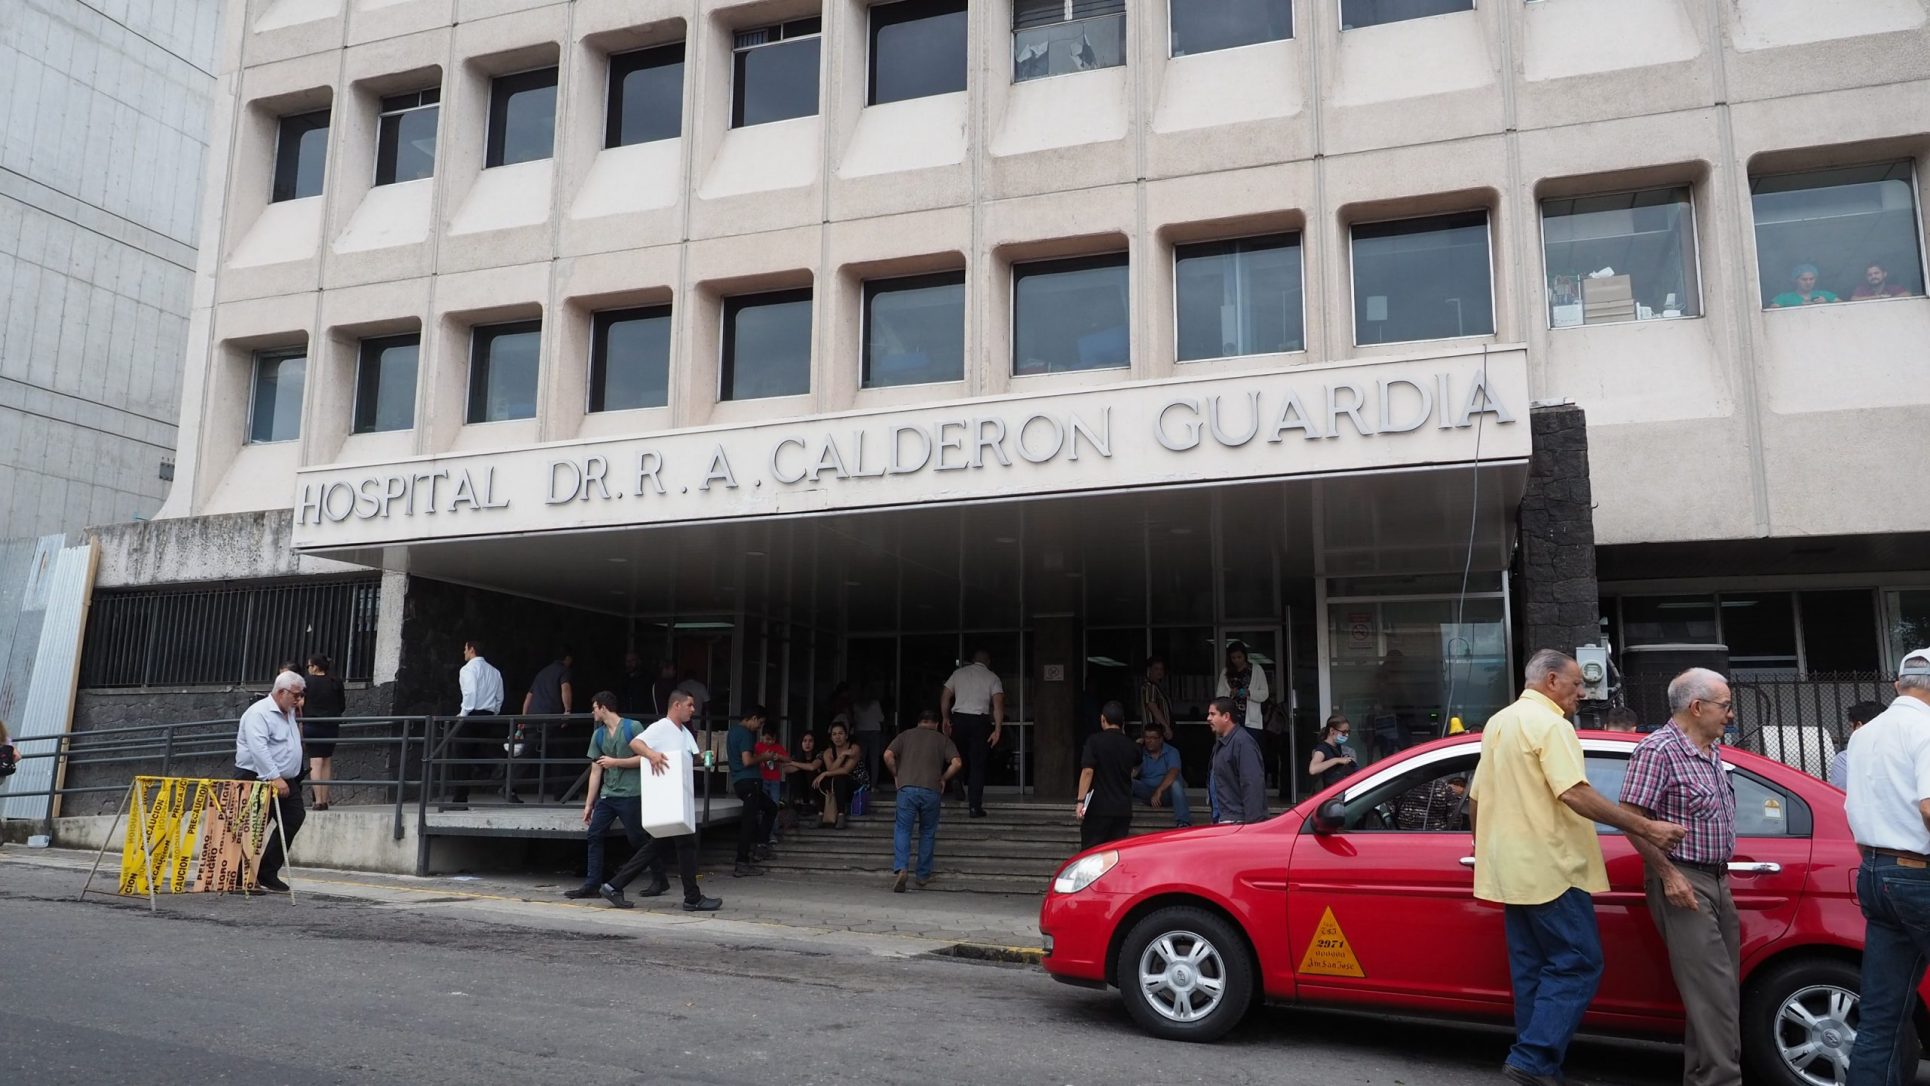 Remodelarán Emergencias del Calderón Guardia: tome nota de cambios en atención de pacientes